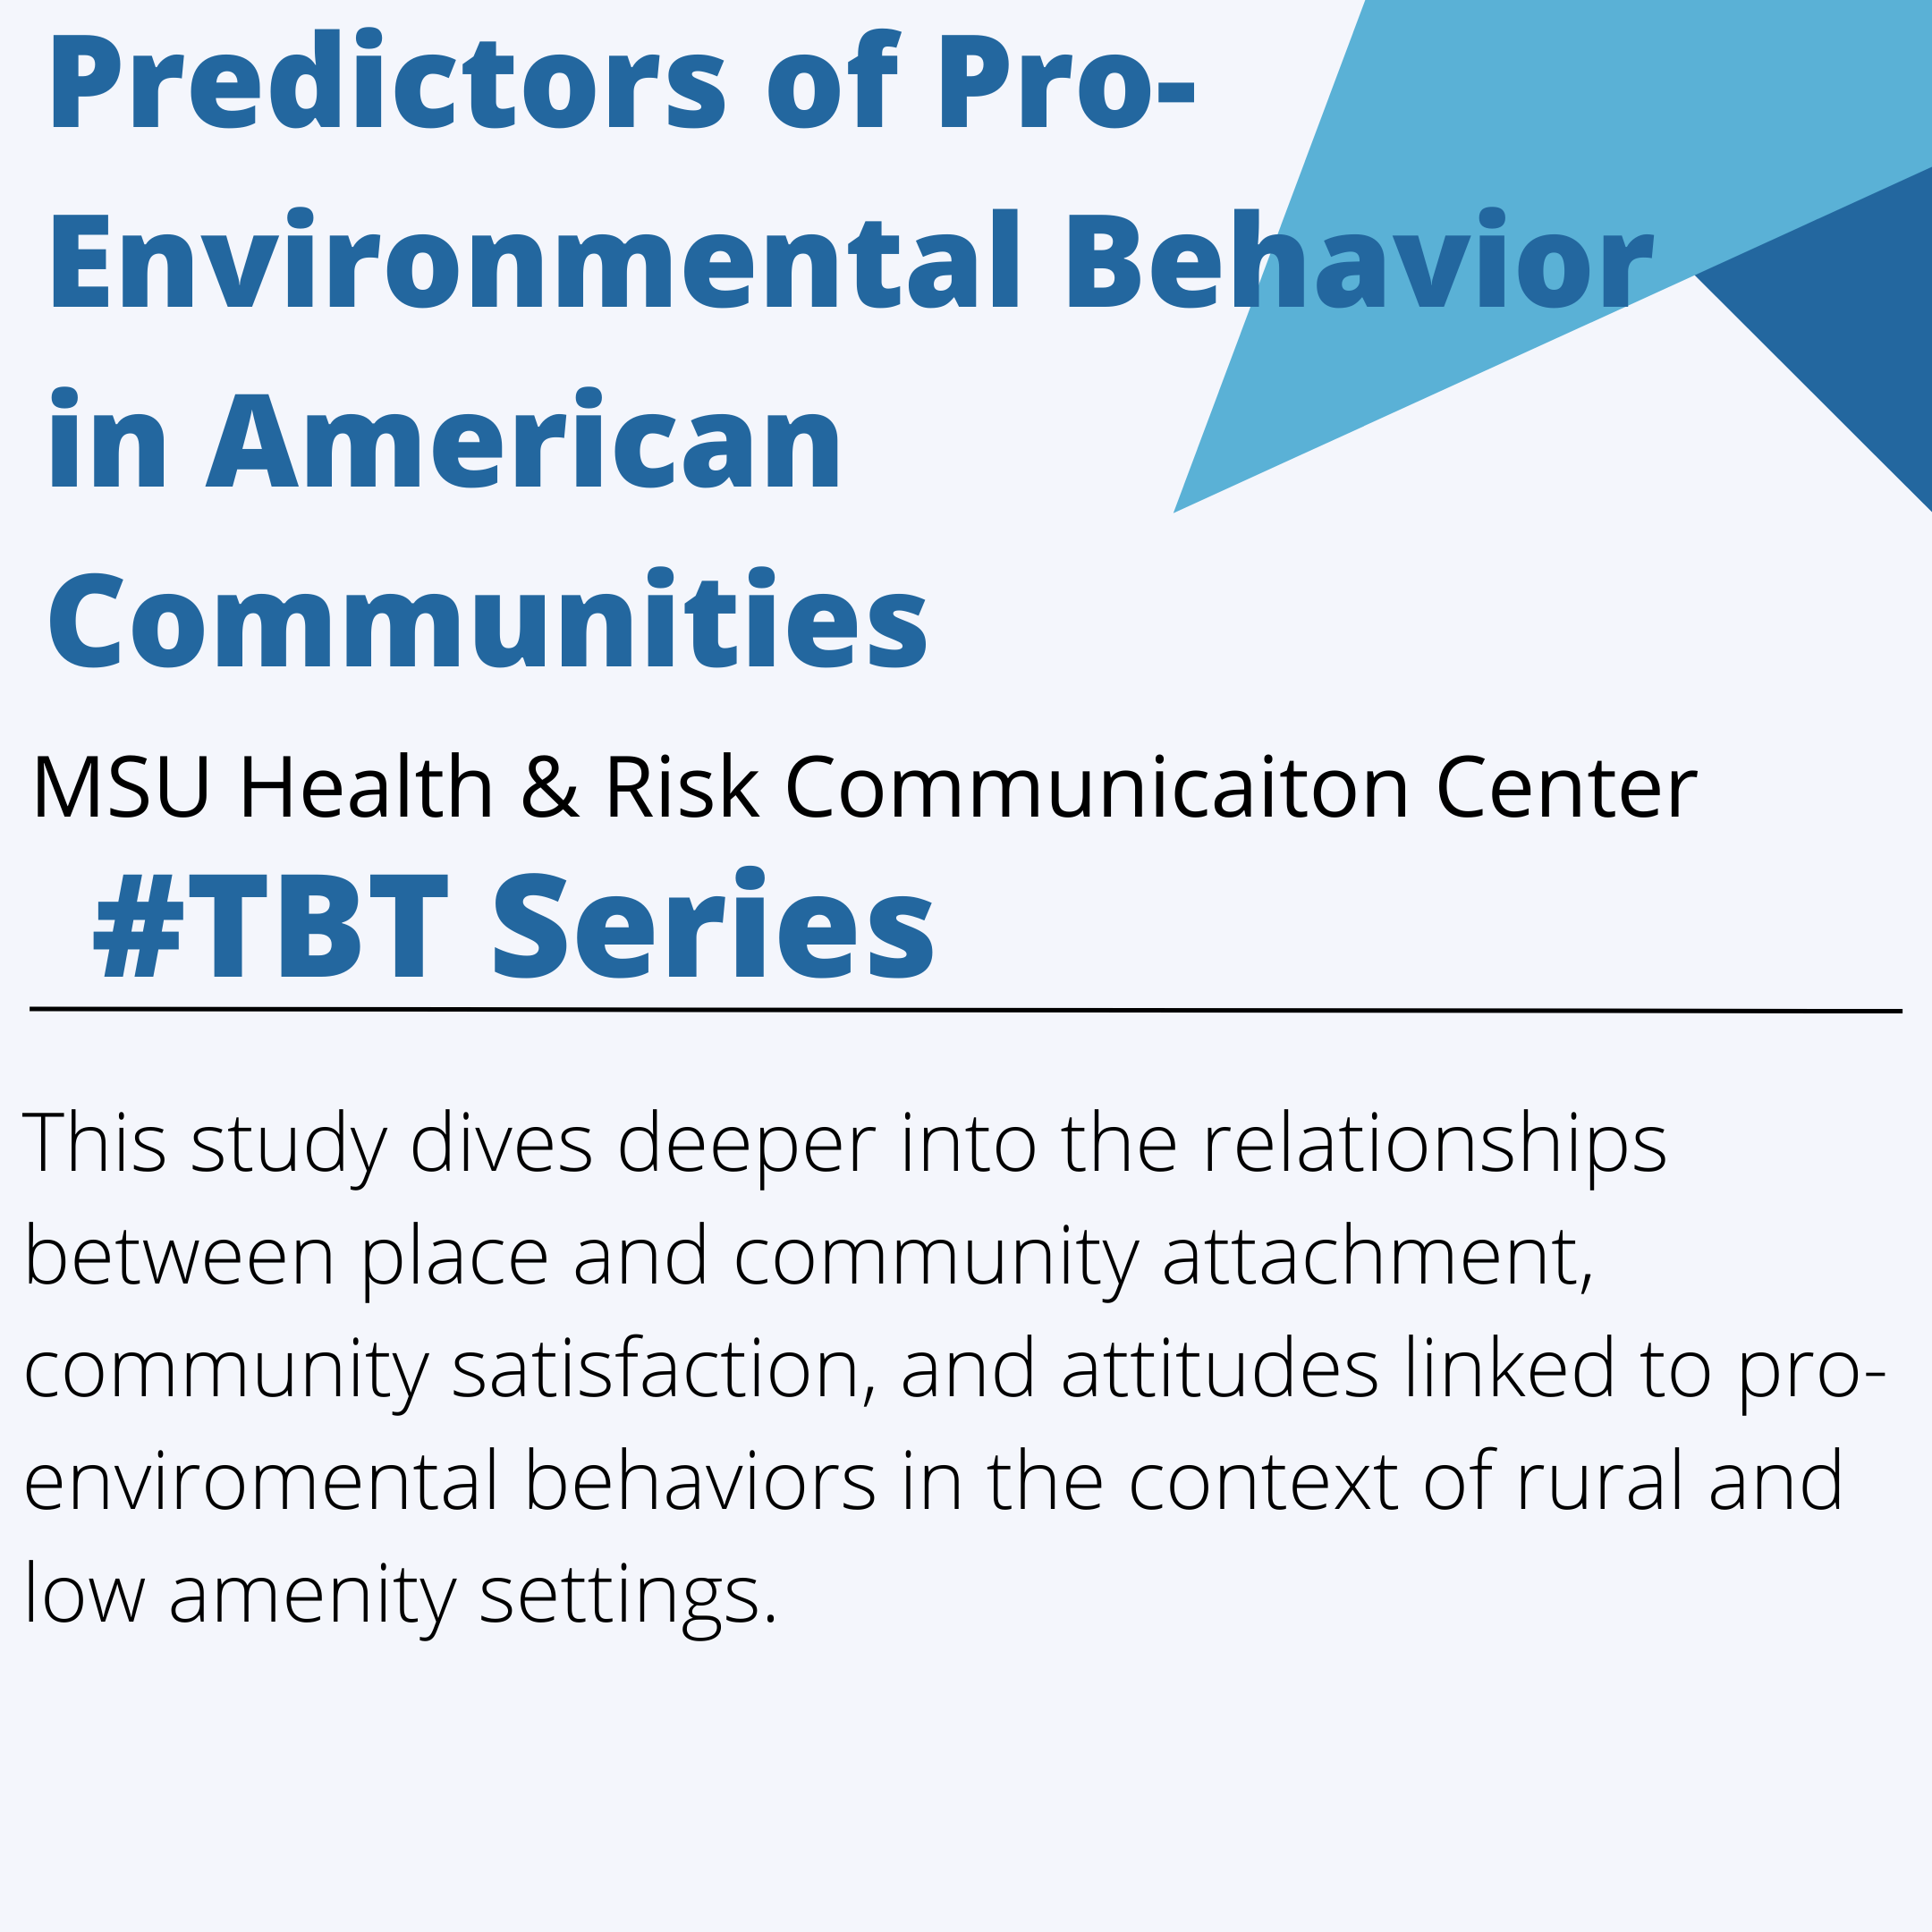 Predictors of Pro-Environmental Behaviors in Rural American Communities 